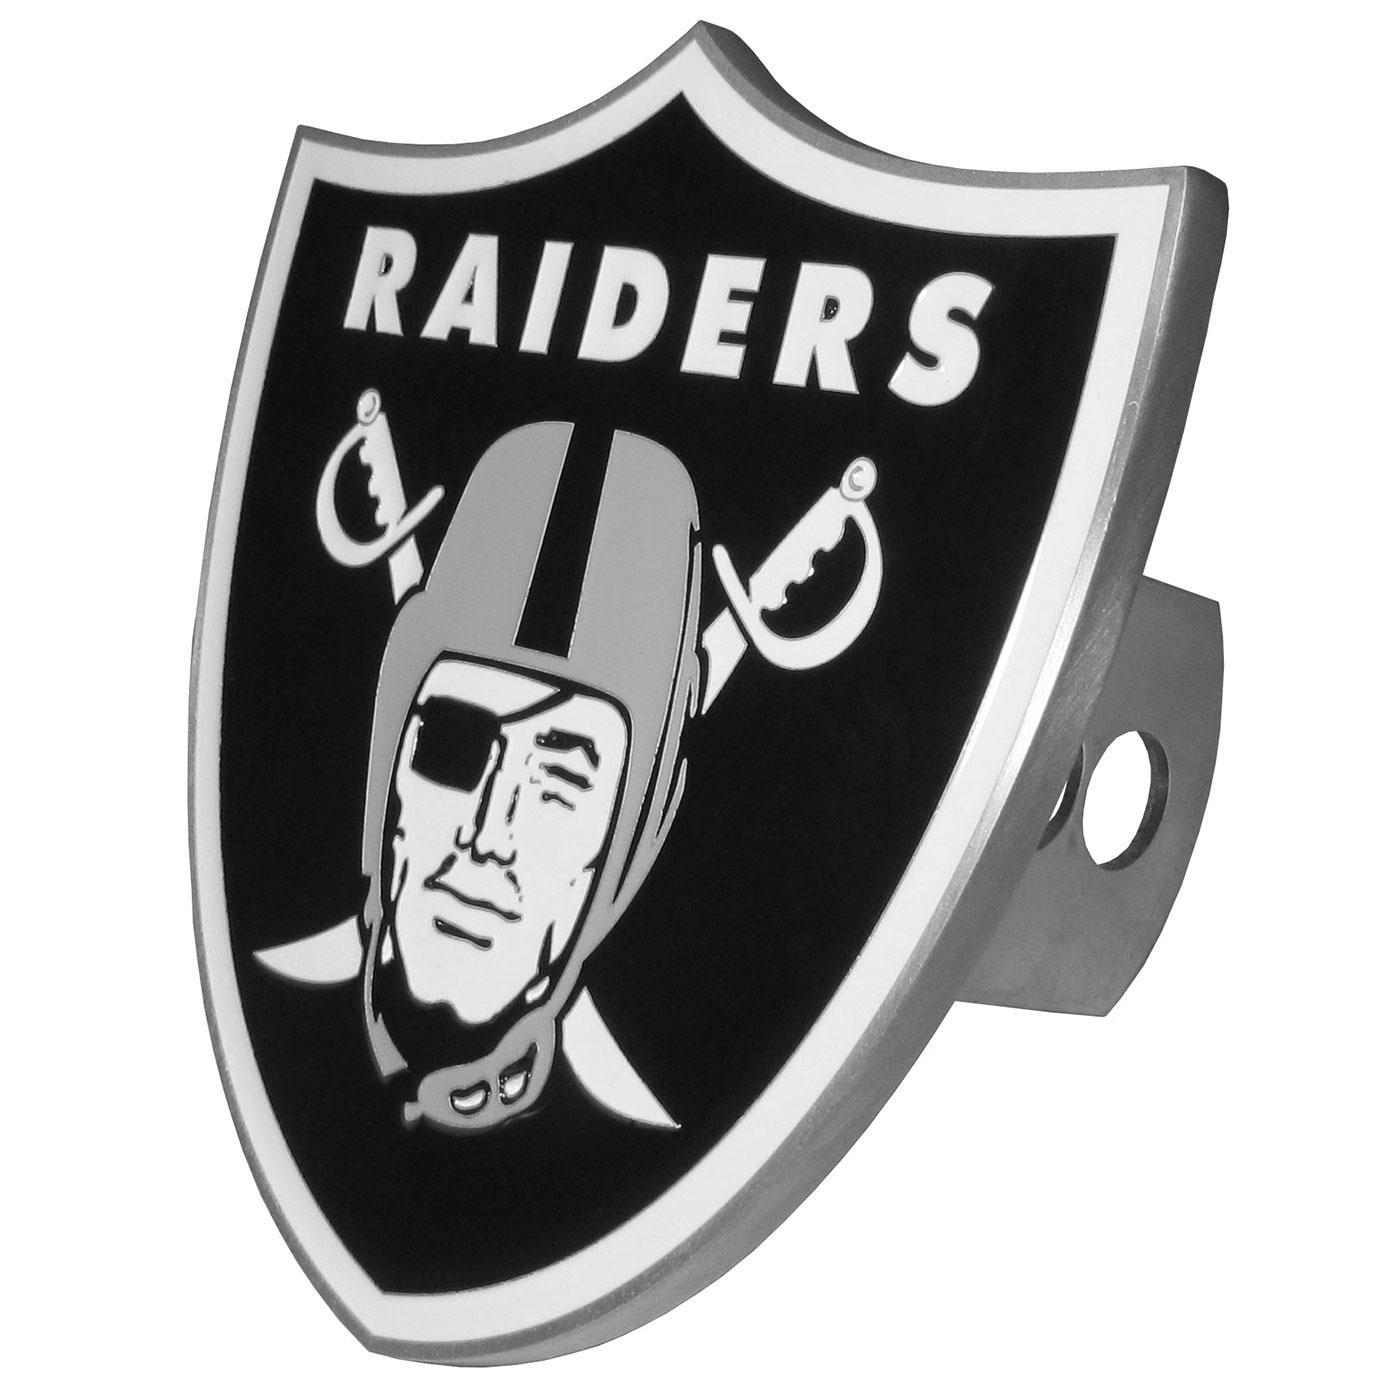 Las Vegas Raiders Logo 1.25 x 2 Universal Plastic Hitch Cover